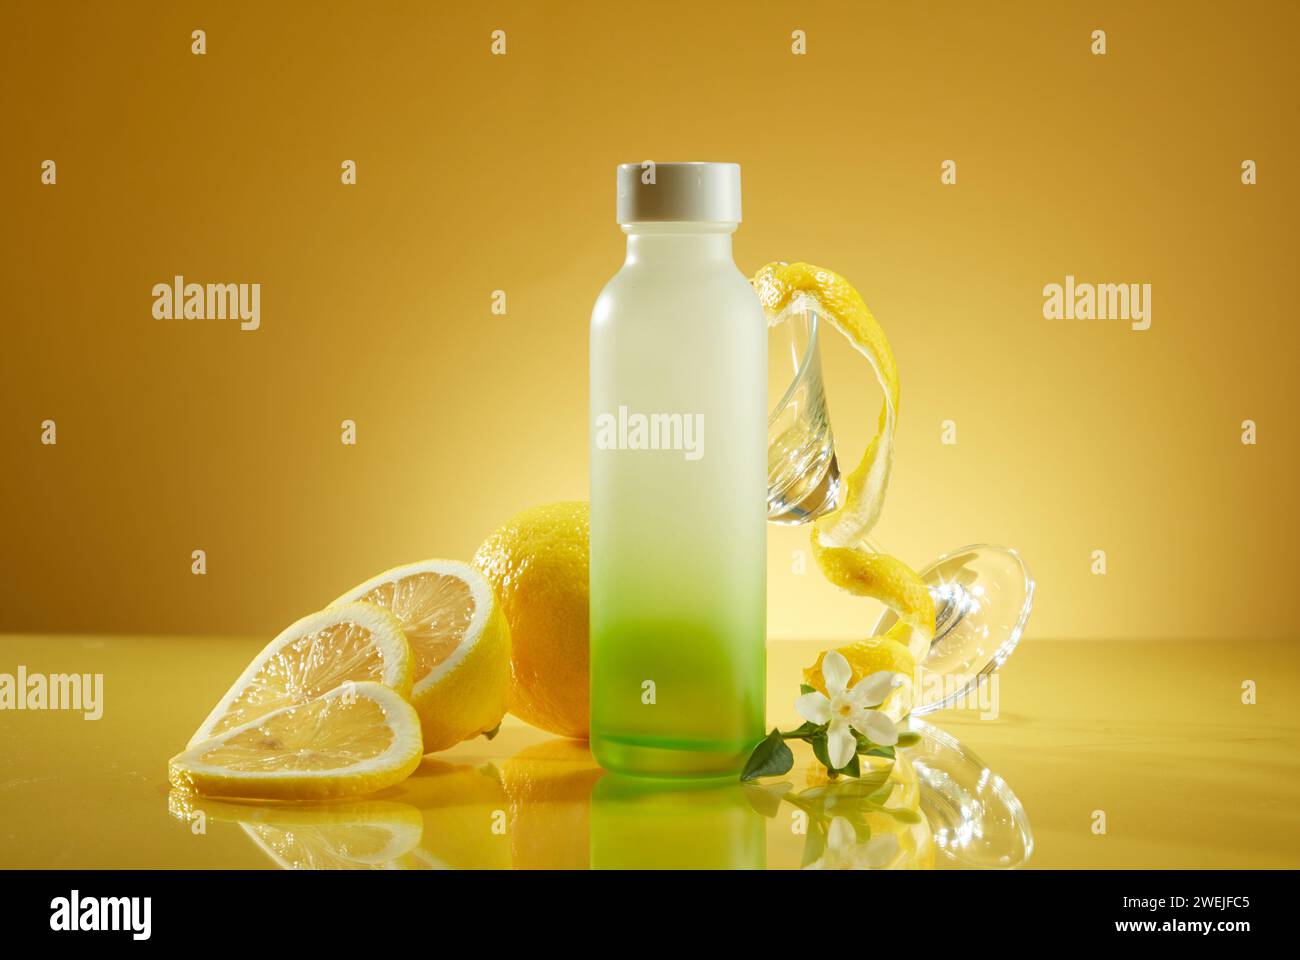 Glasflasche ohne Branding mit frischer Zitrone und Glasbecher auf gelbem Hintergrund. Verpackungen für Getränkeprodukte mit frischem Zitronengeschmack für ein r Stockfoto